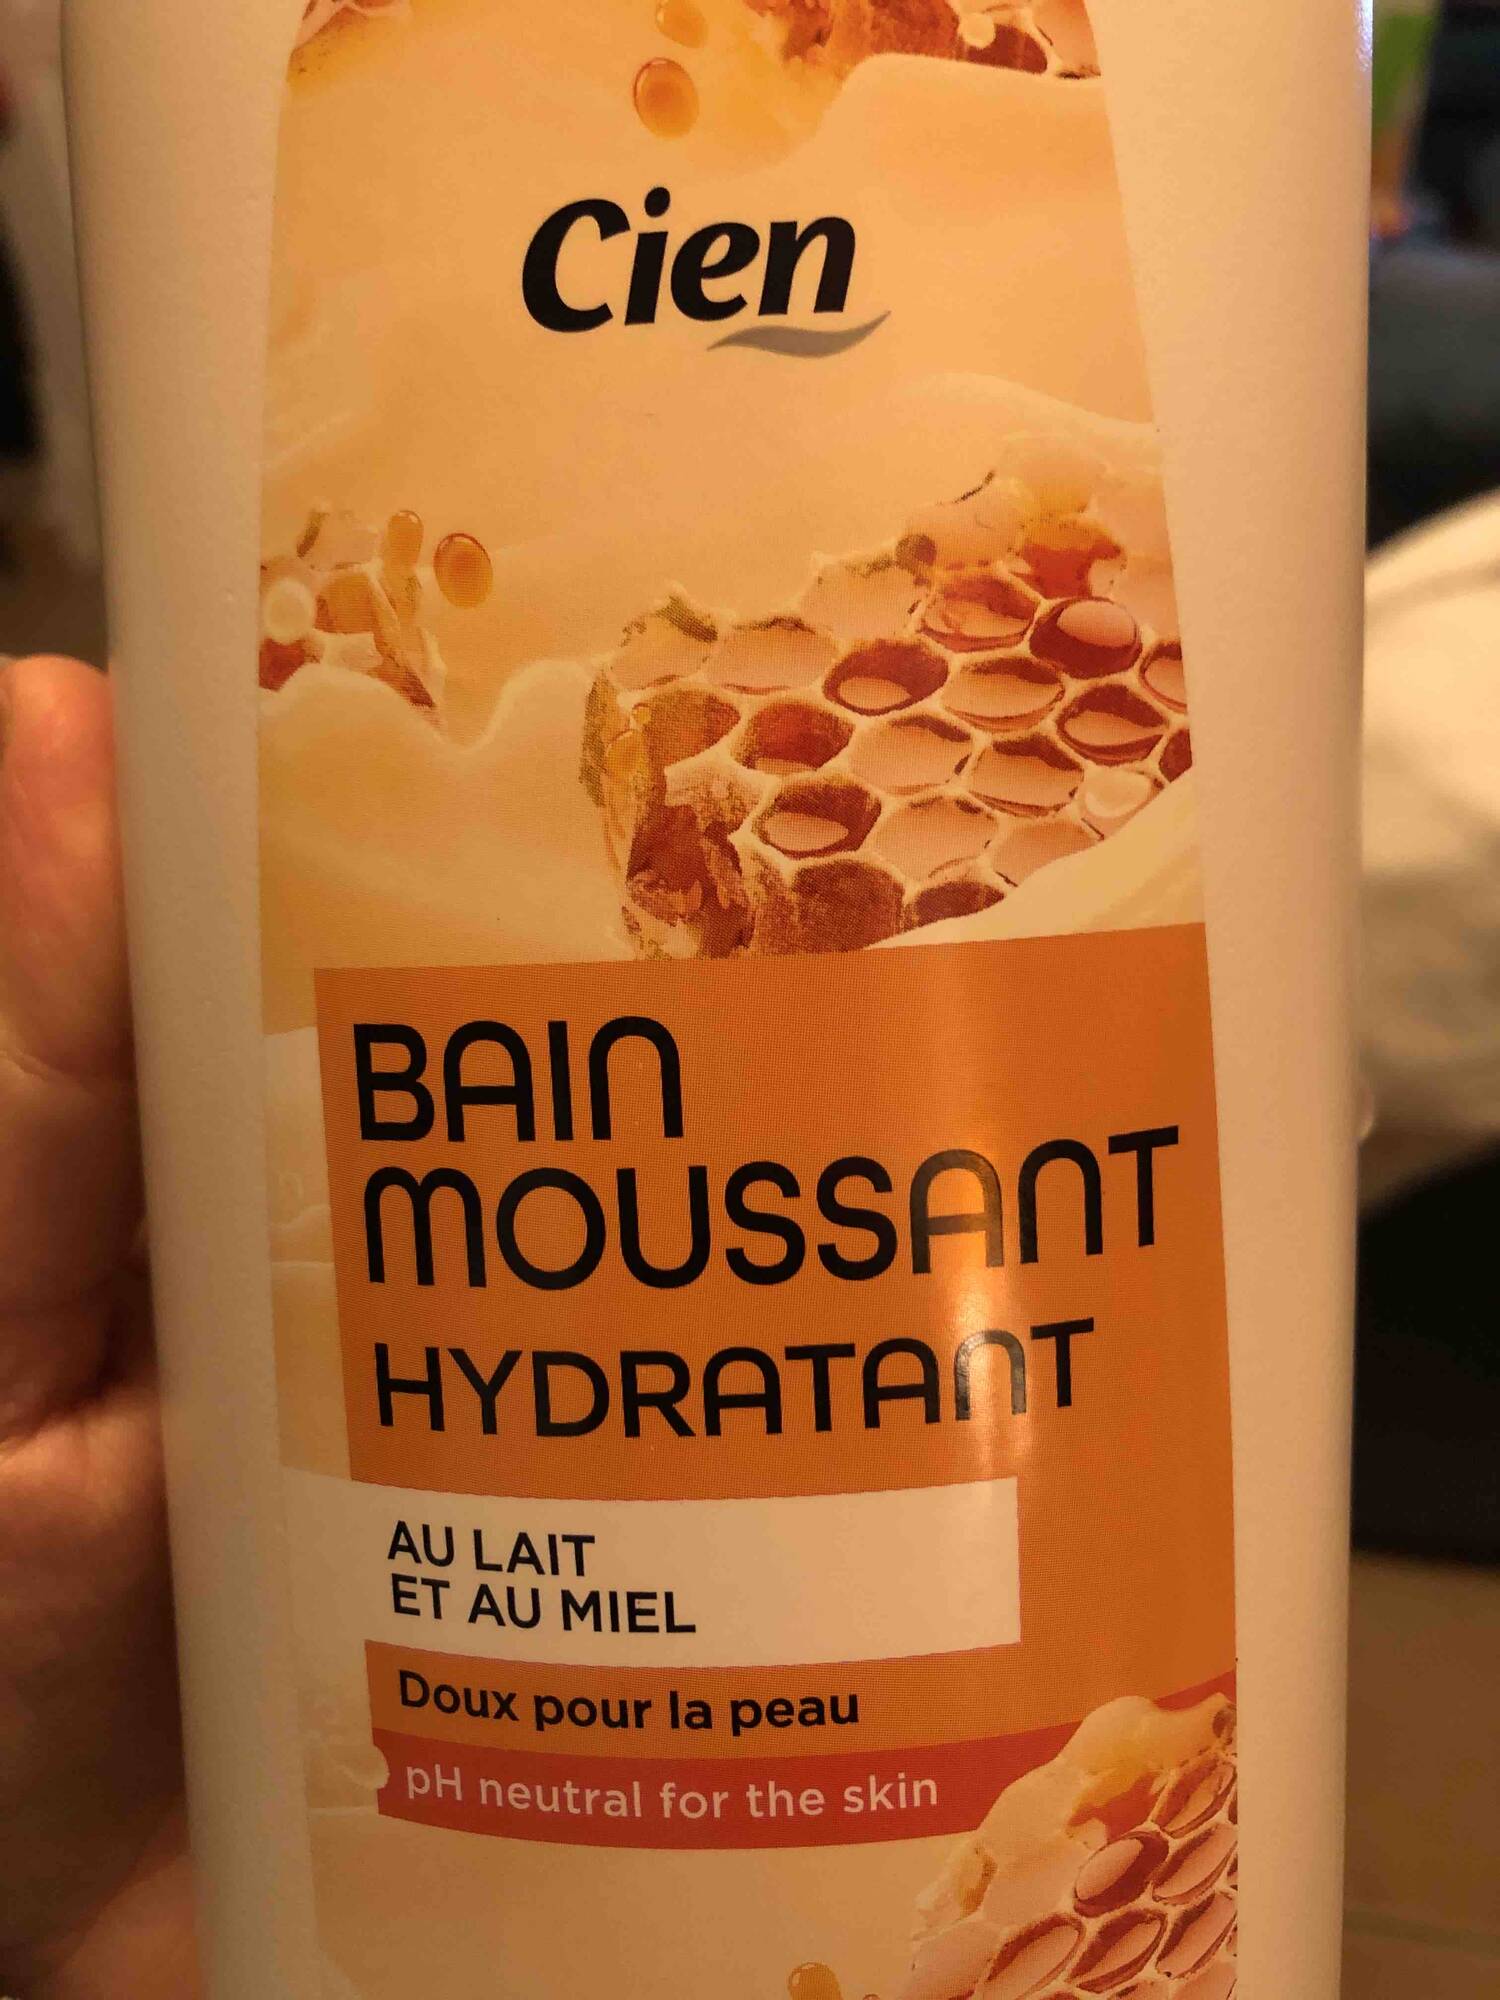 CIEN - Bain moussant hydratant au lait et miel